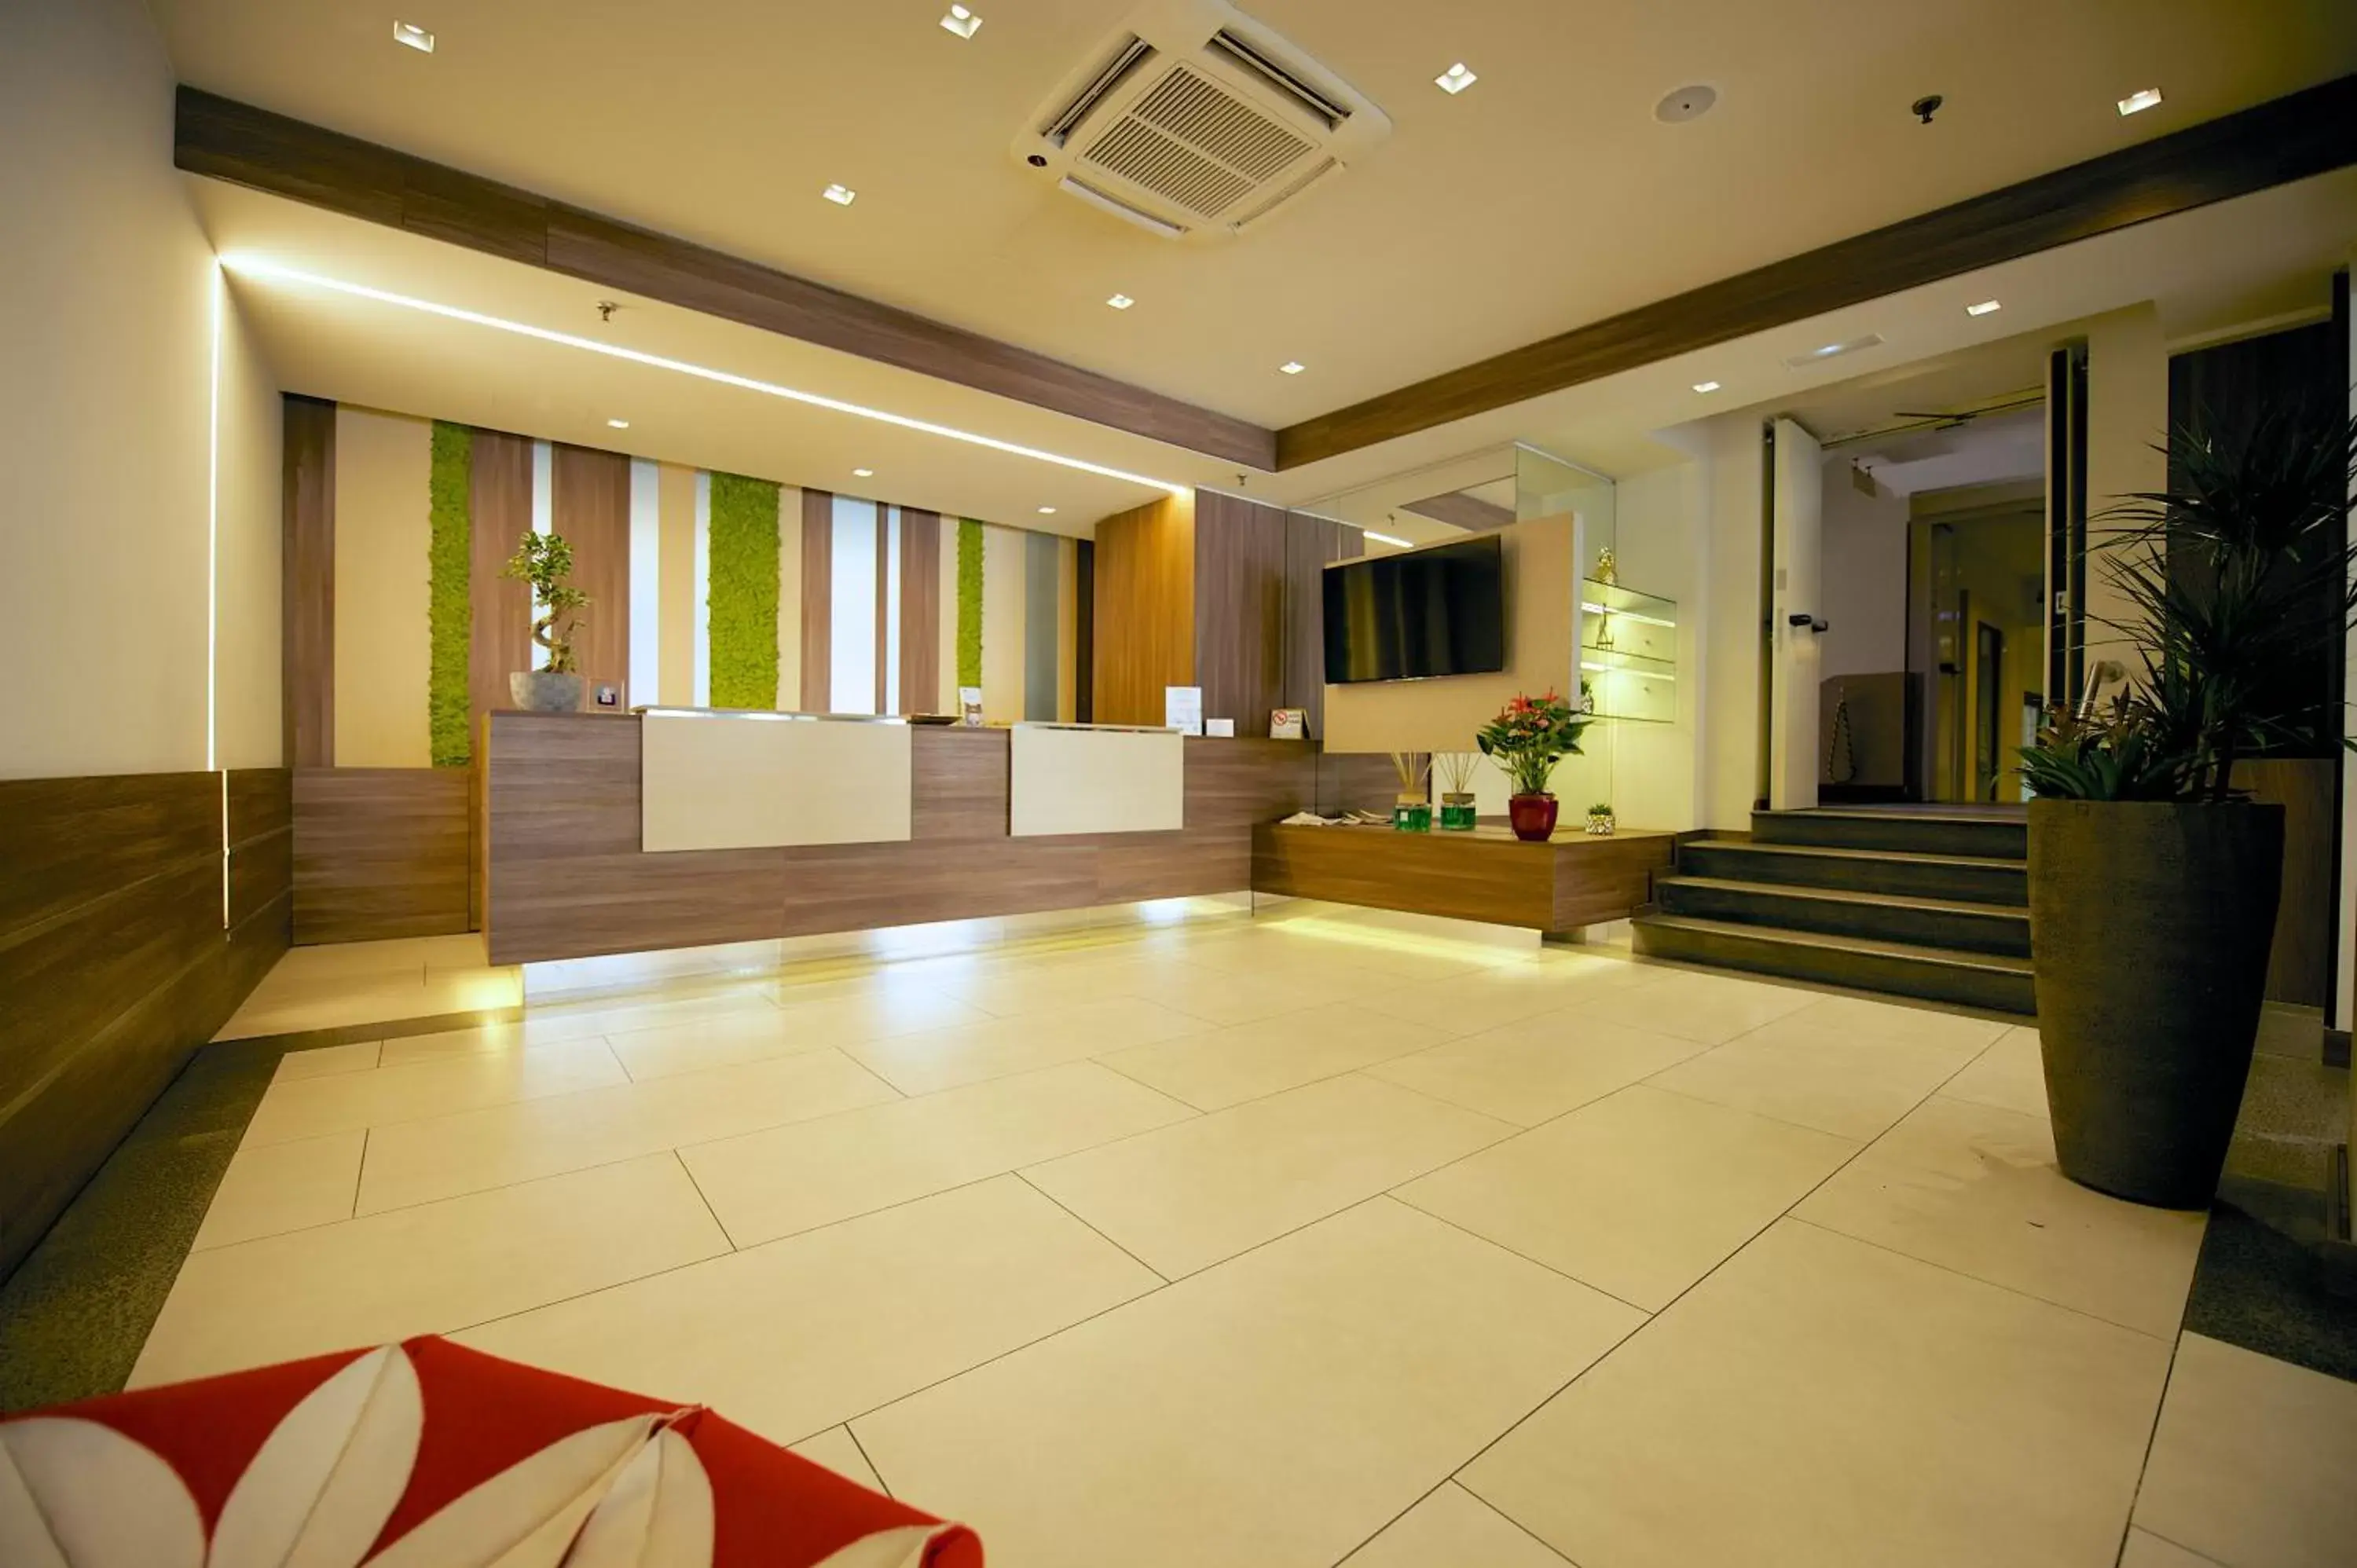 Lobby or reception, Lobby/Reception in Best Western Hotel Luxor